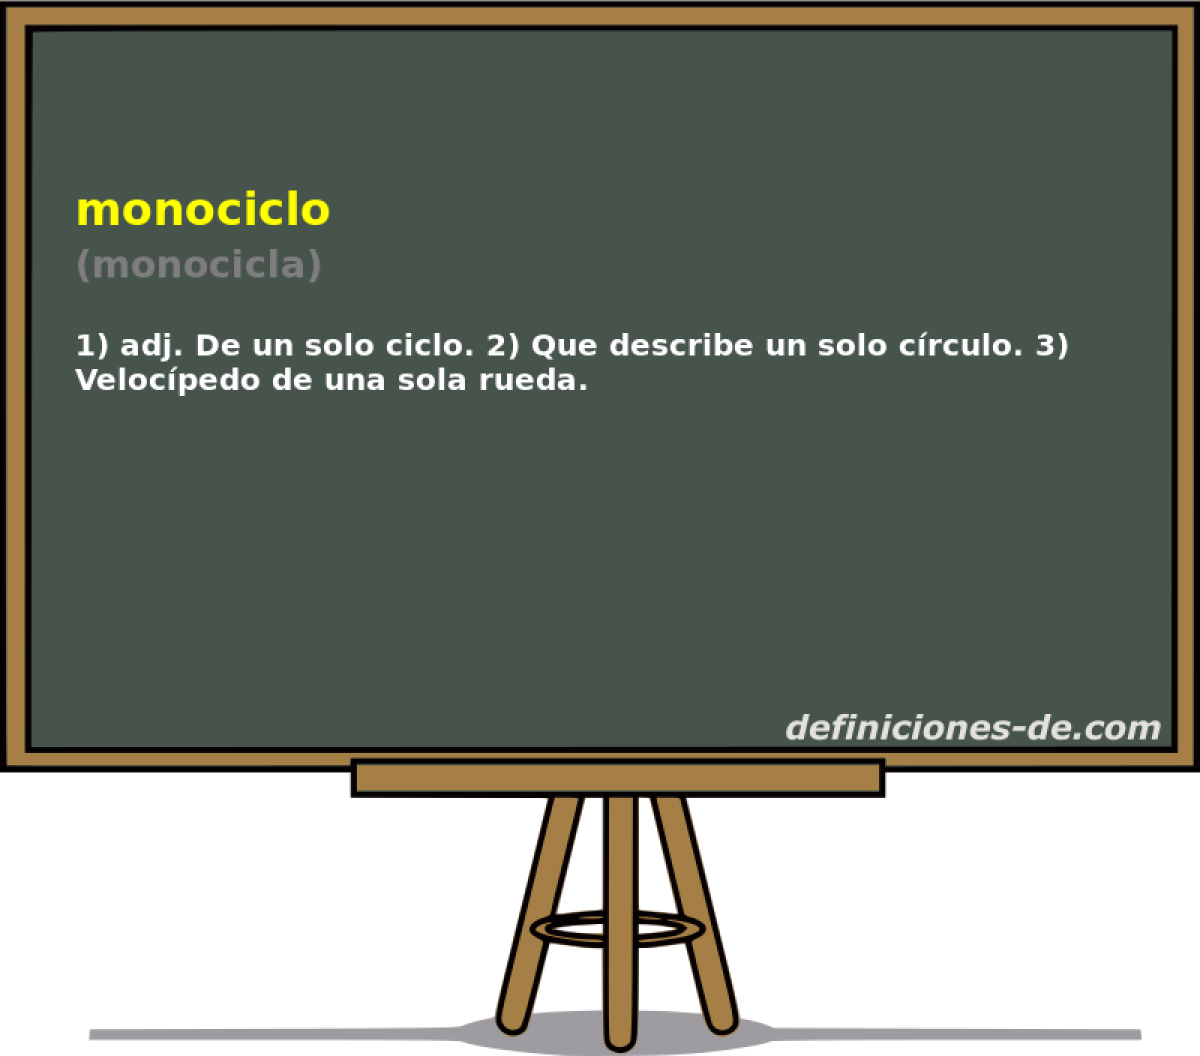 monociclo (monocicla)